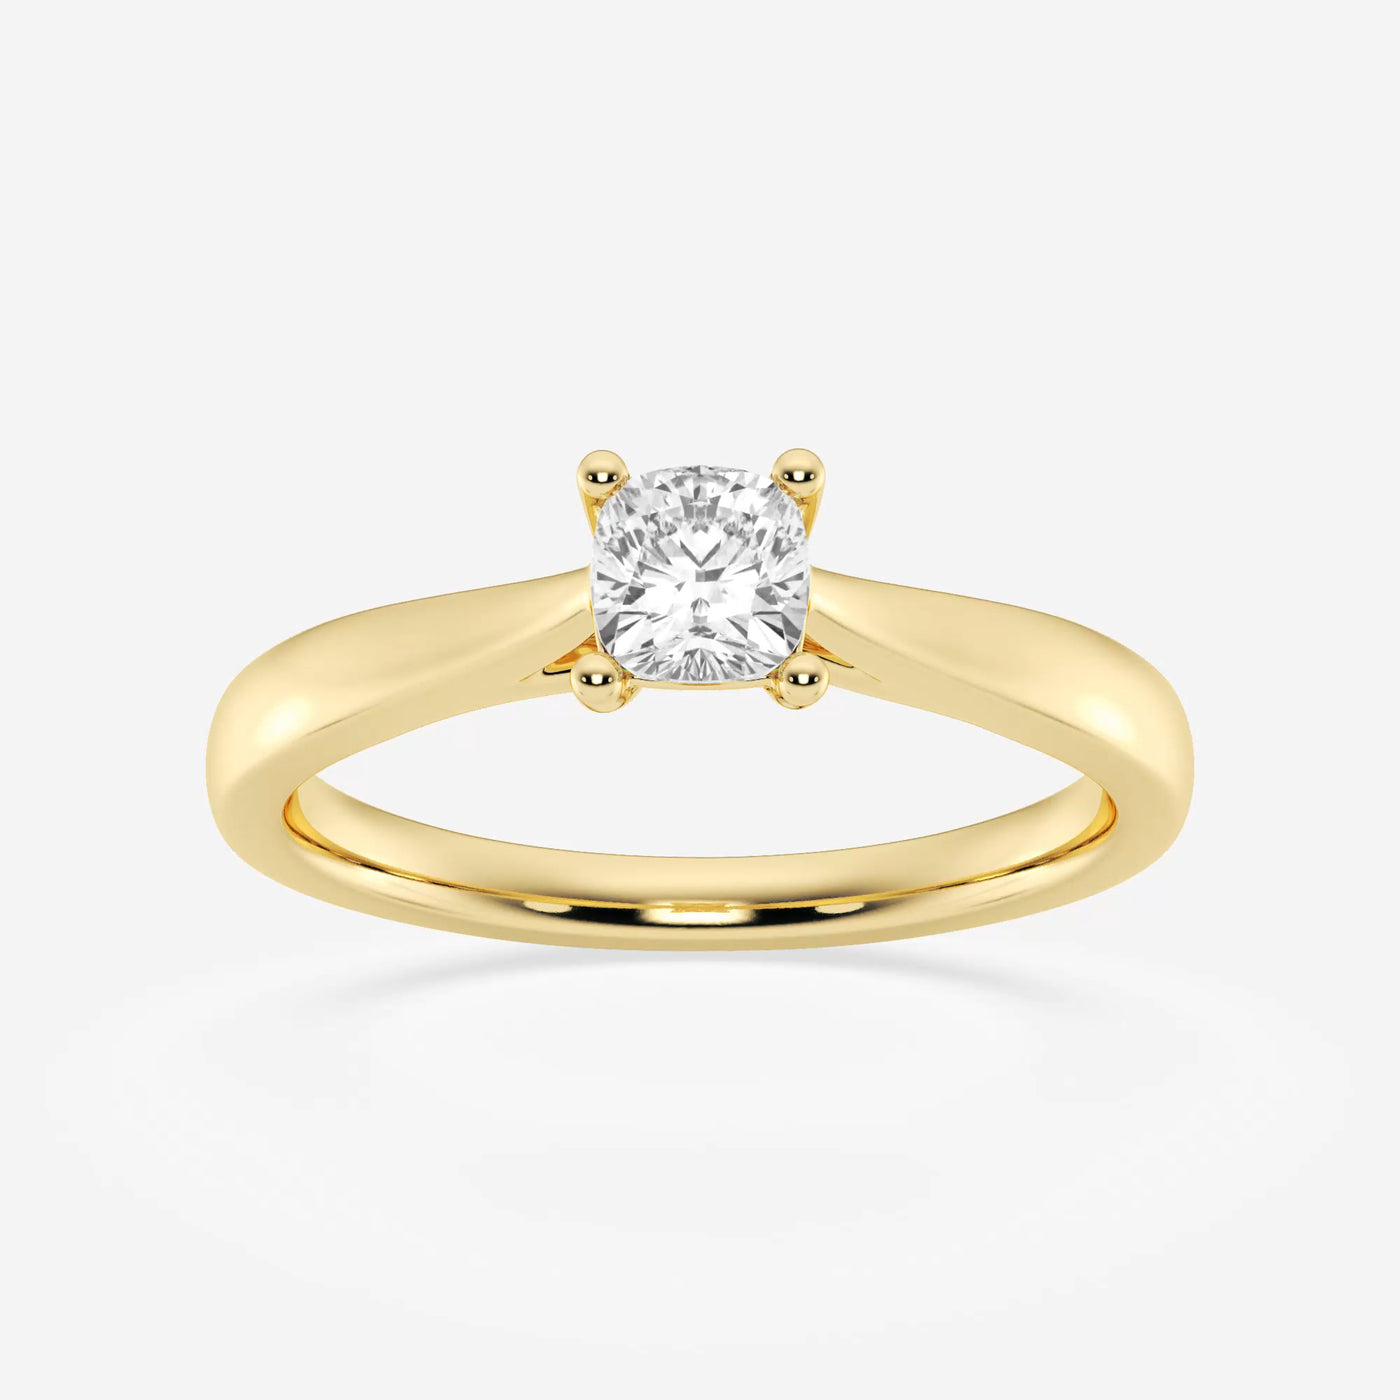 _main_image@SKU:LGD-JOR1090-GY4~#carat_0.50#diamond-quality_fg,-vs2+#metal_18k-yellow-gold